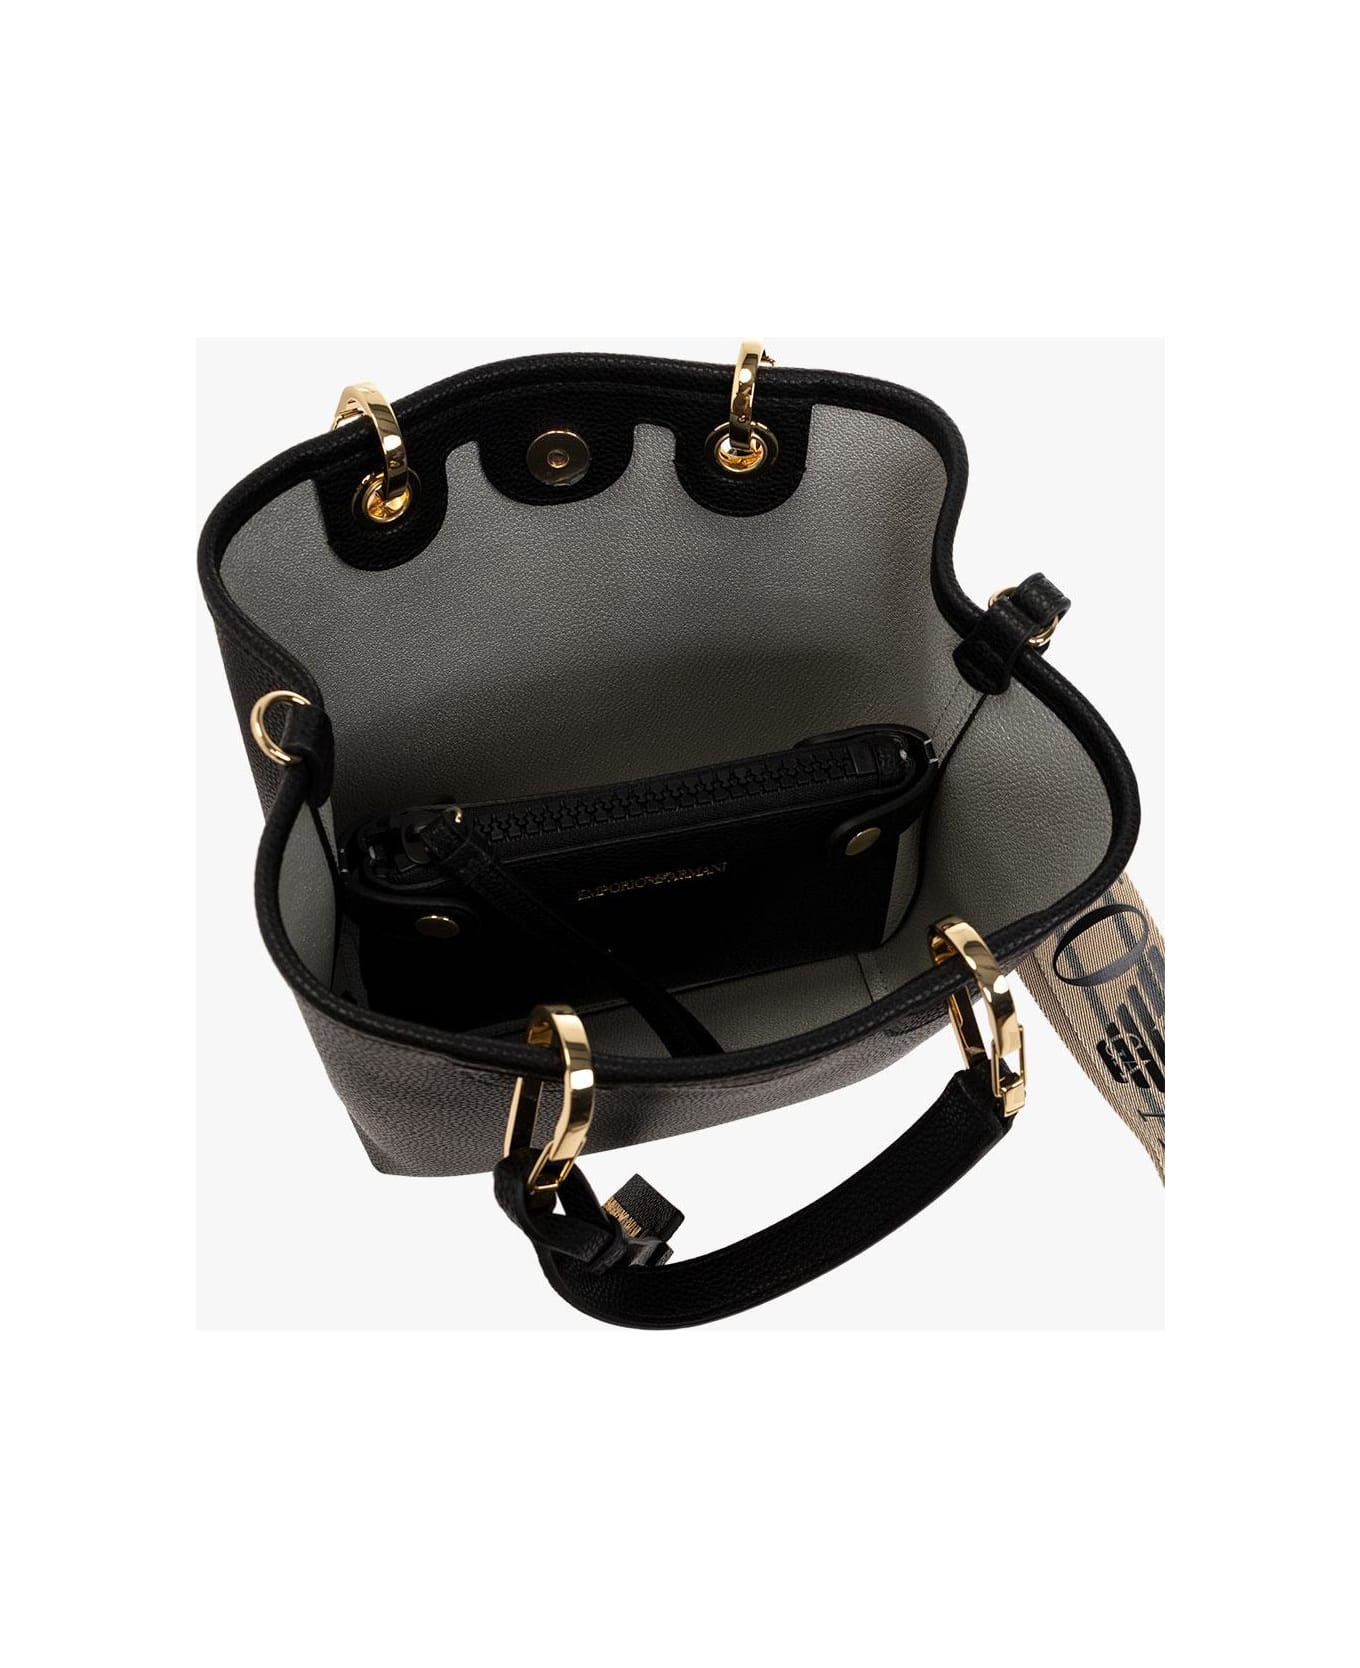 Emporio Armani Shopper Bag With Logo - BLACK トートバッグ